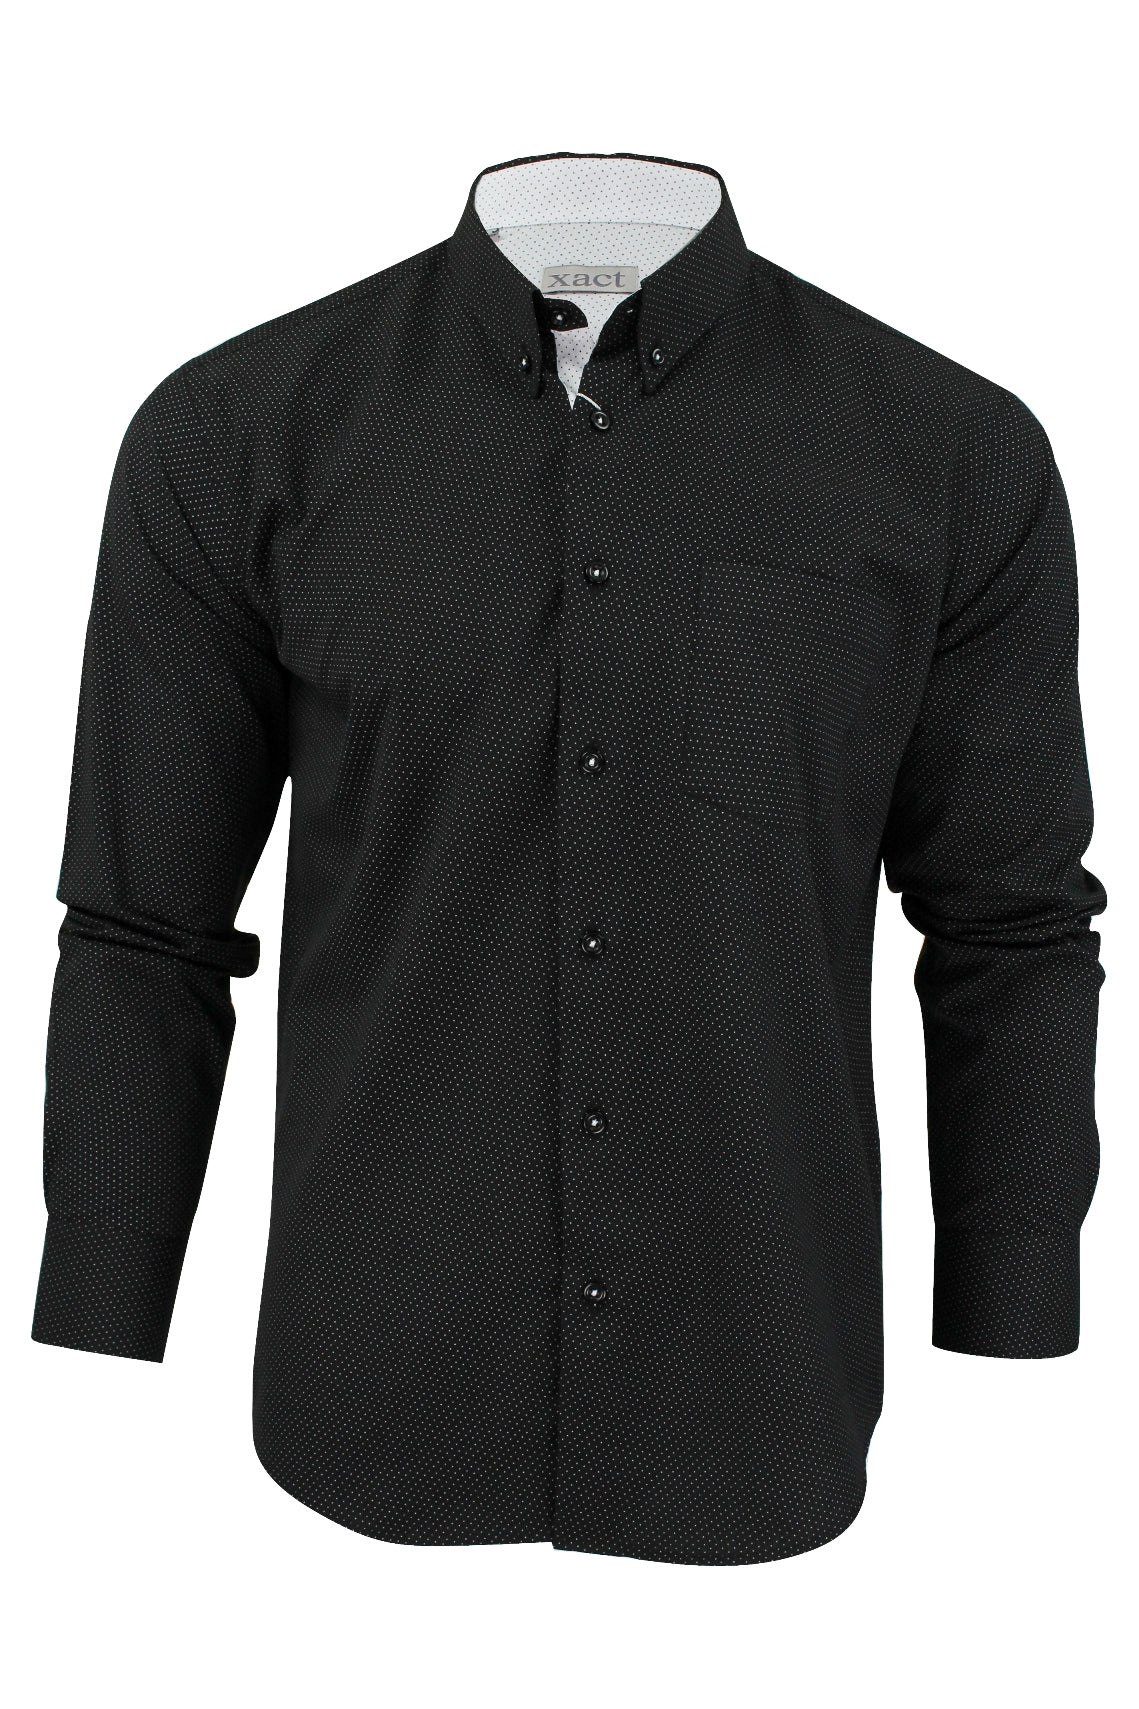 Mens Long Sleeved Shirt by Xact Clothing Mini Polka Dot, 01, 1510121, Black